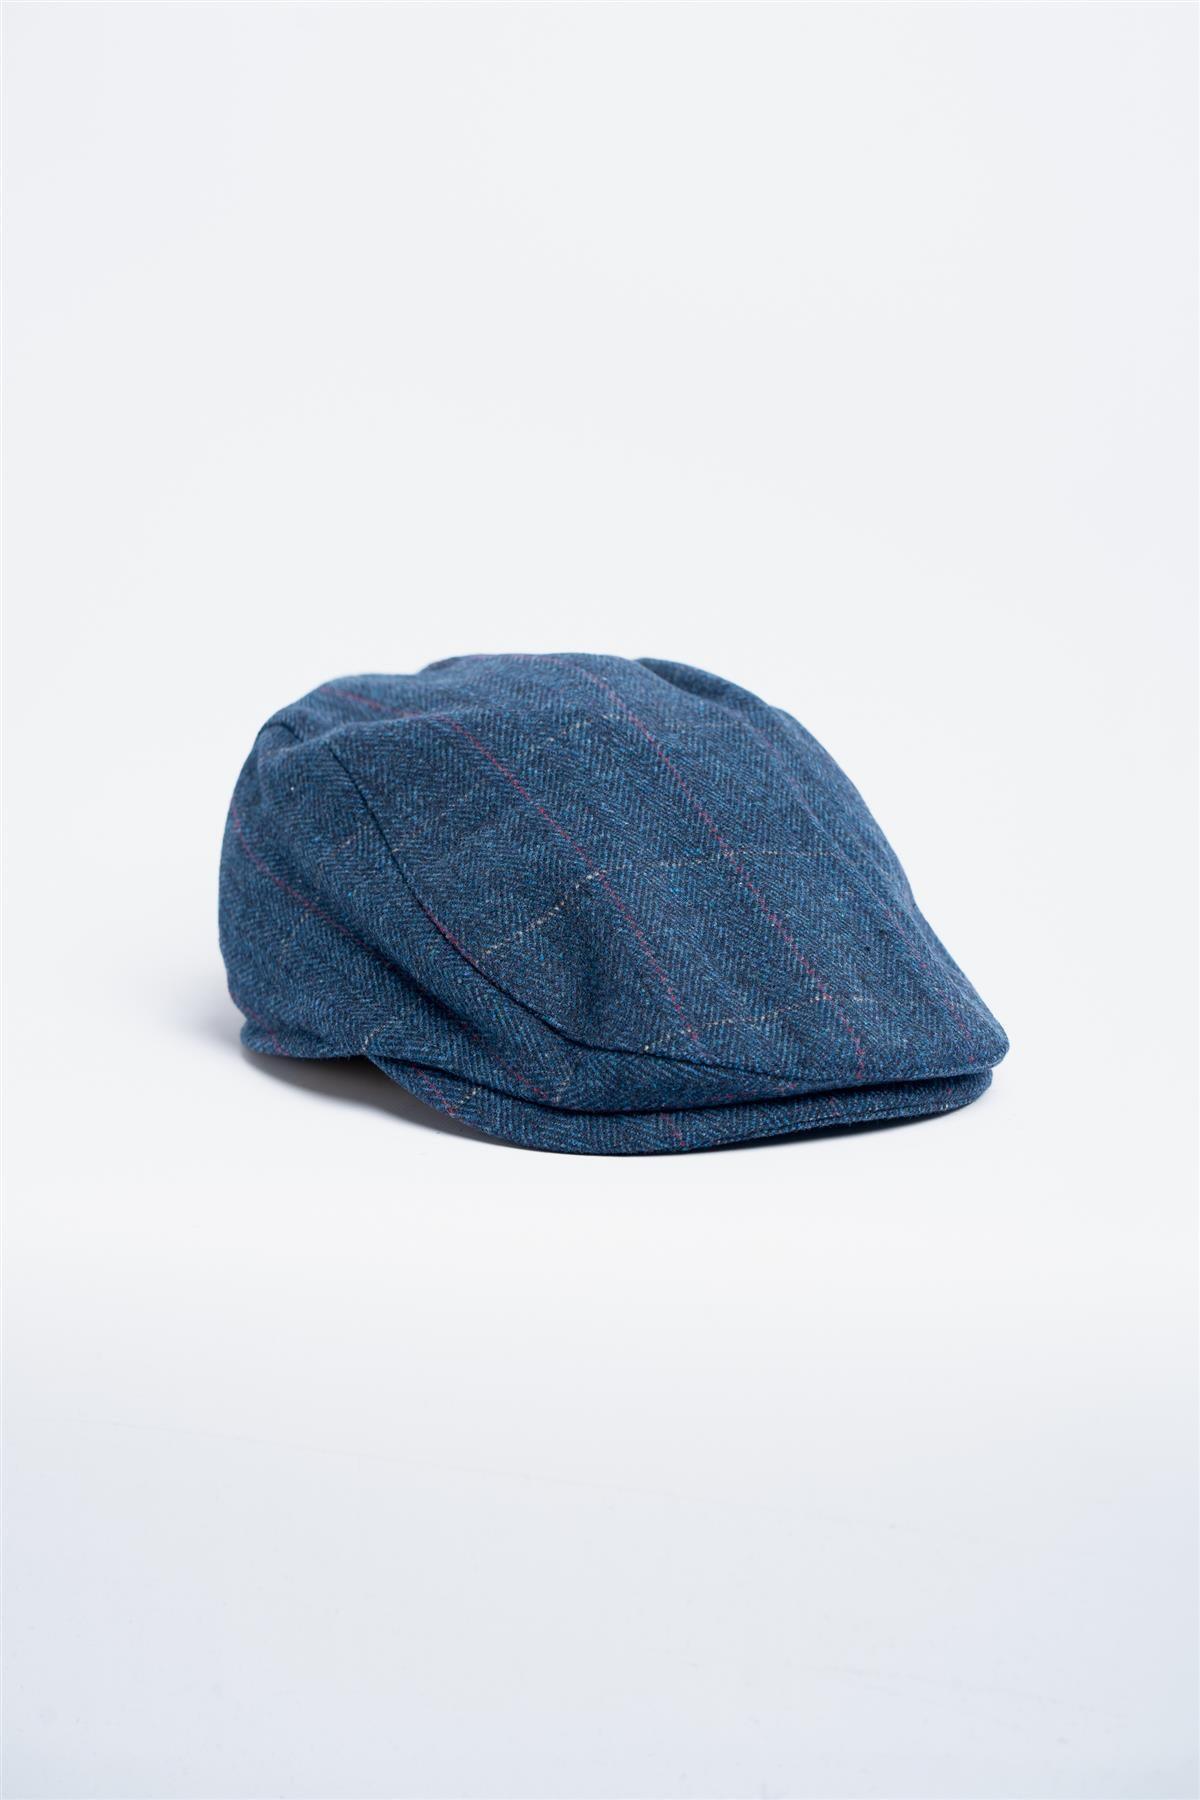 Carnegi blue tweed flat cap front